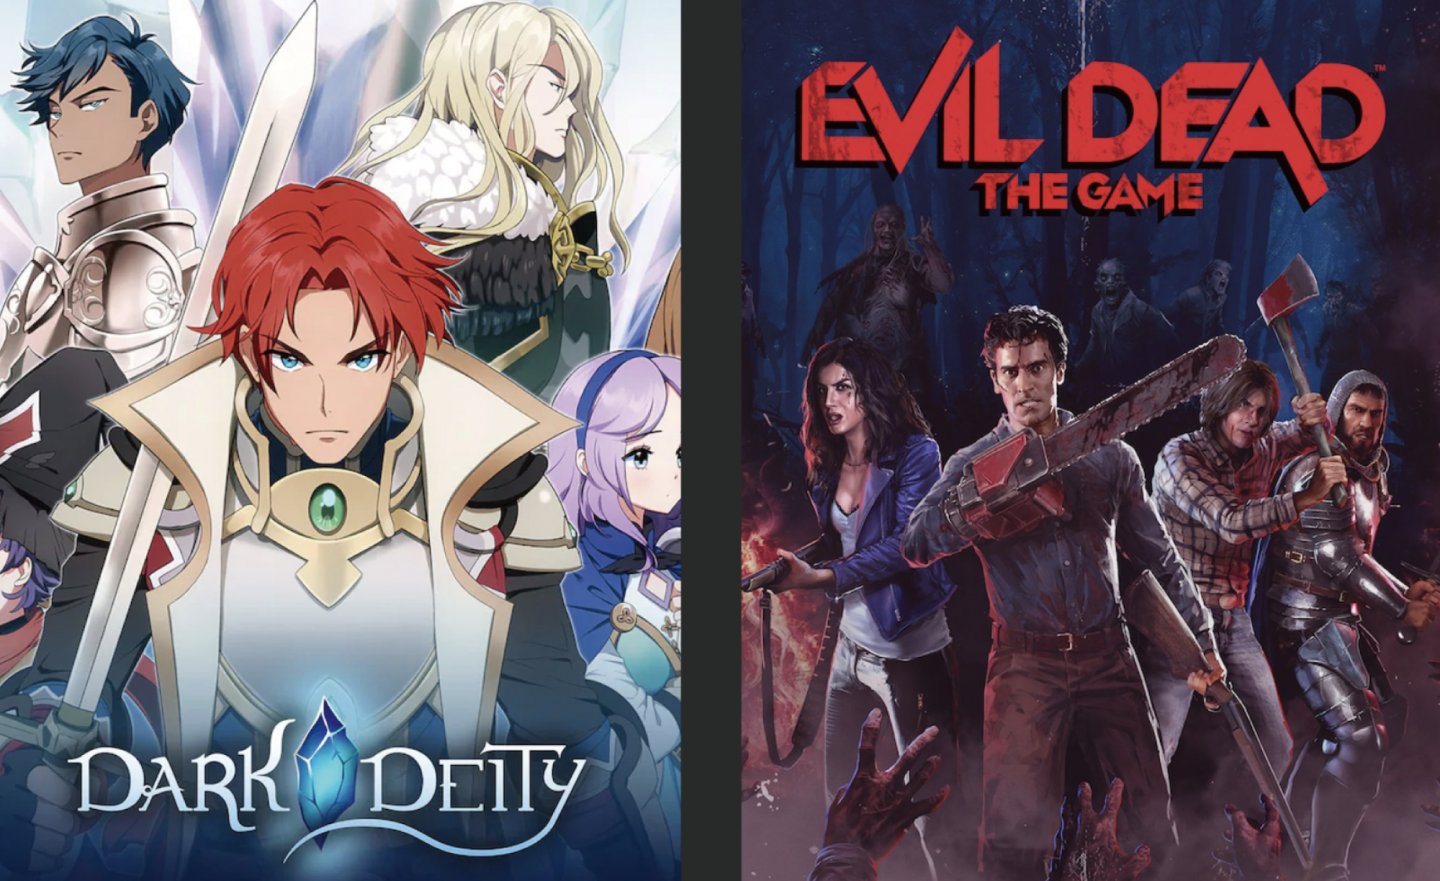 【限時免費】《Dark Deity》、《Evil Dead: The Game》兩款遊戲放送中，快搶在 2022 年 11 月 25 日 00:00 前領取